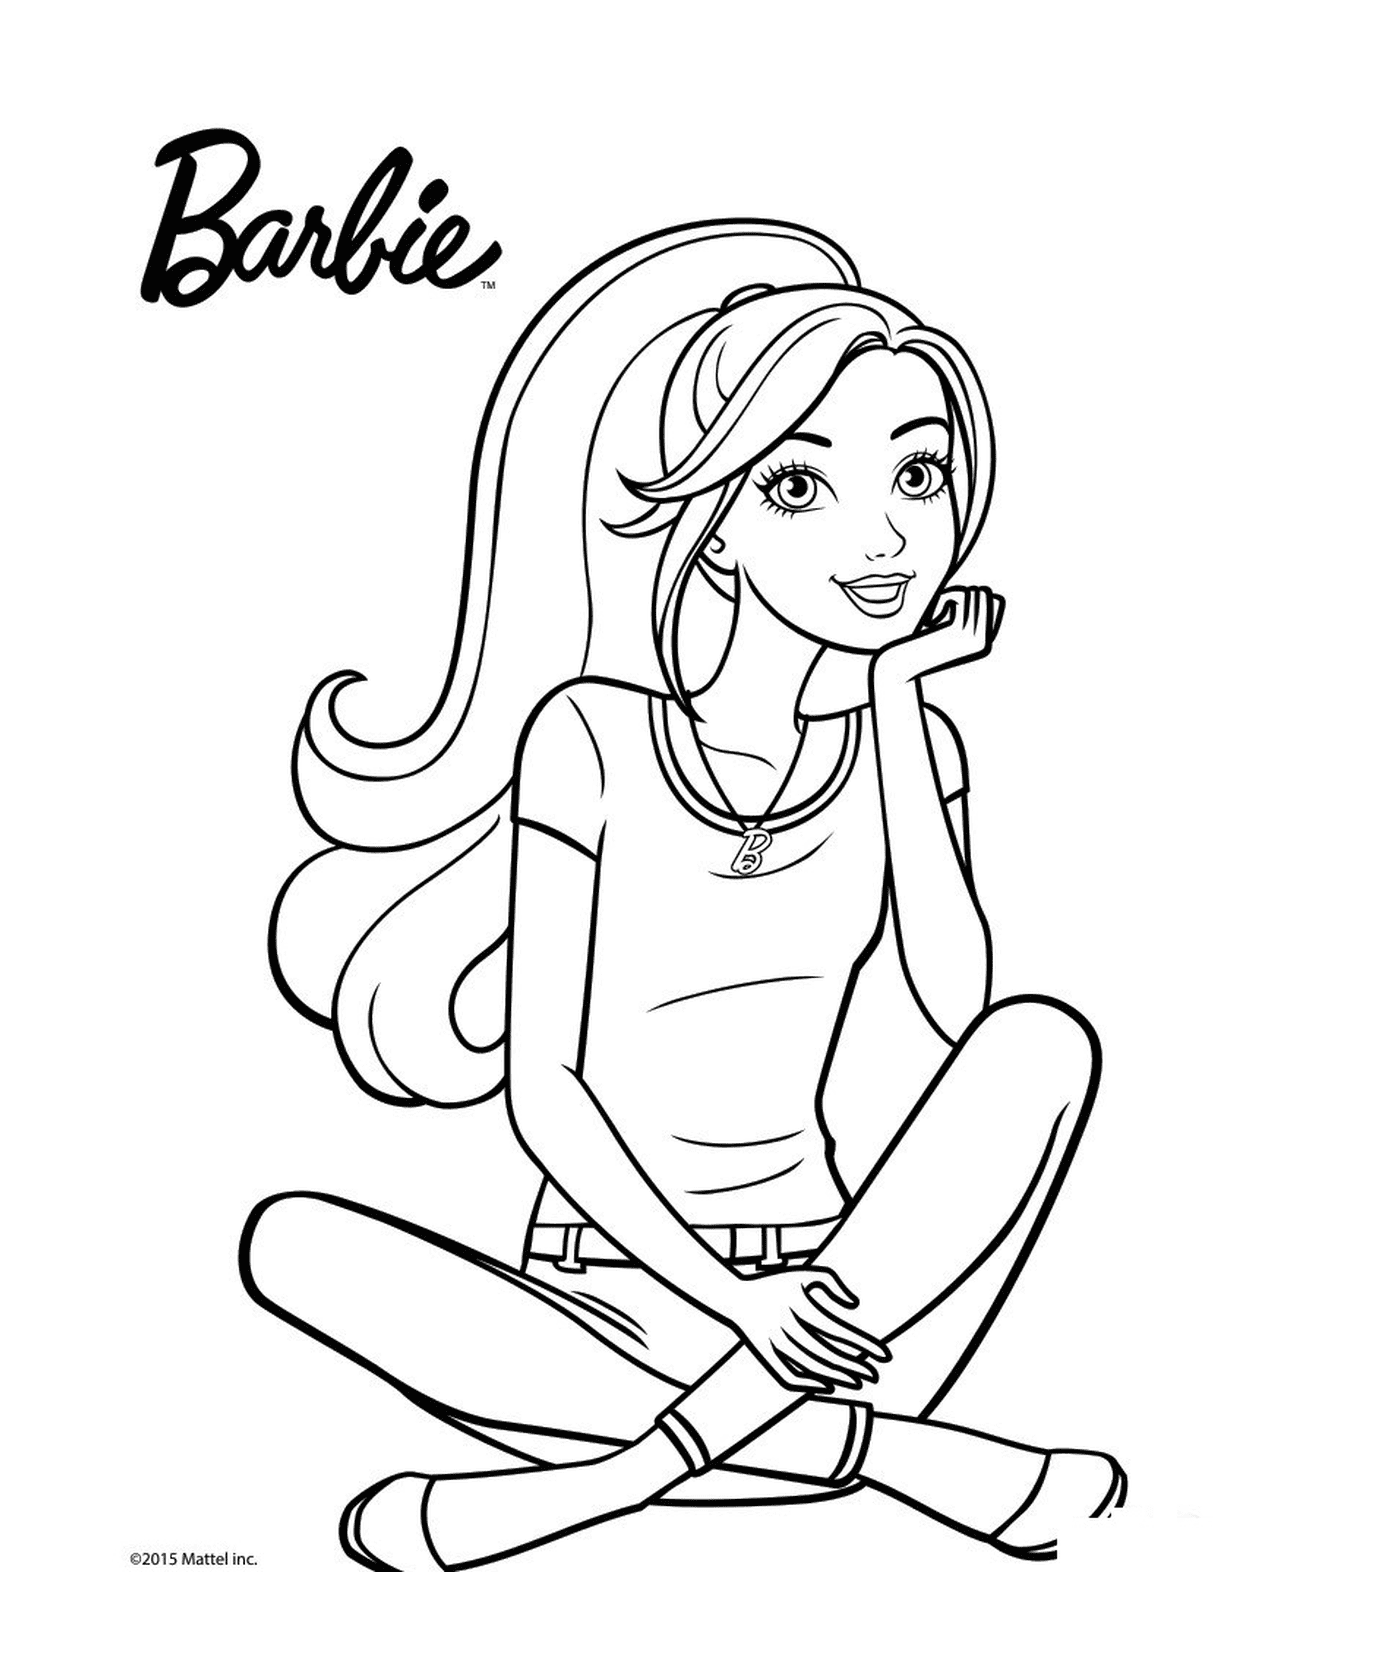  Una bambola pensante e felice Barbie 